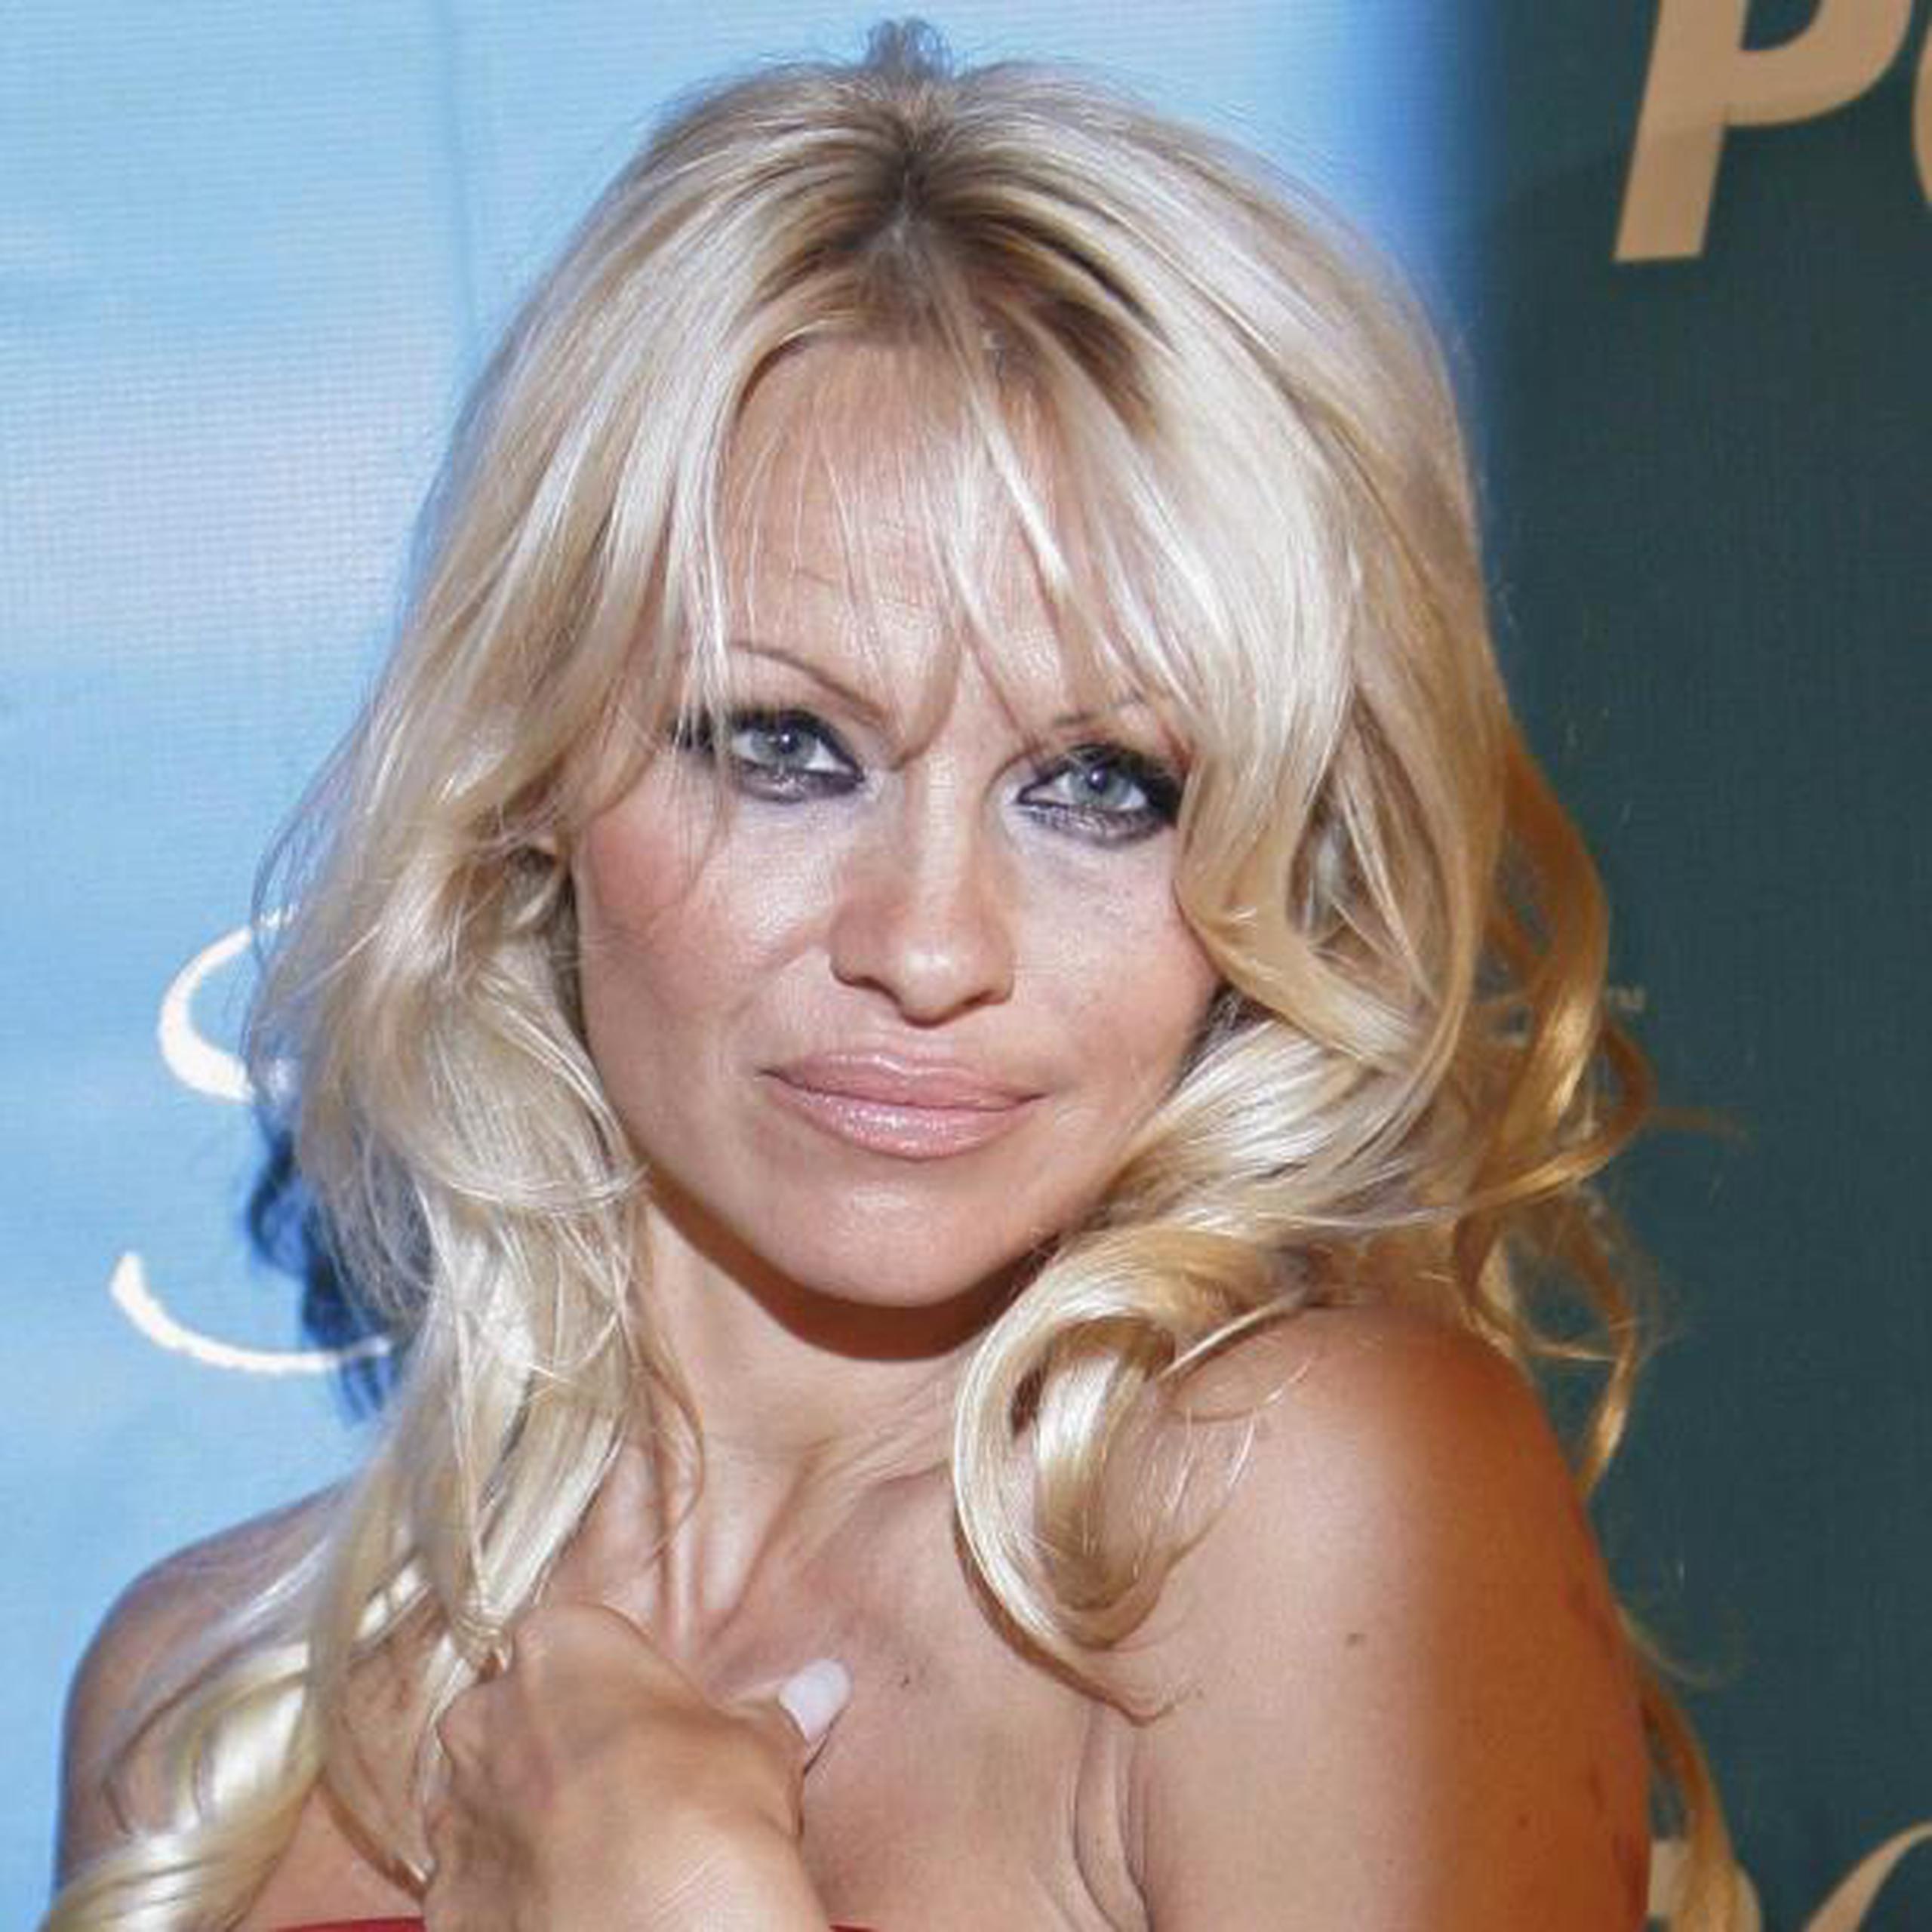 Los productores aun no han confirmado la participación de Pamela Anderson. (Archivo)